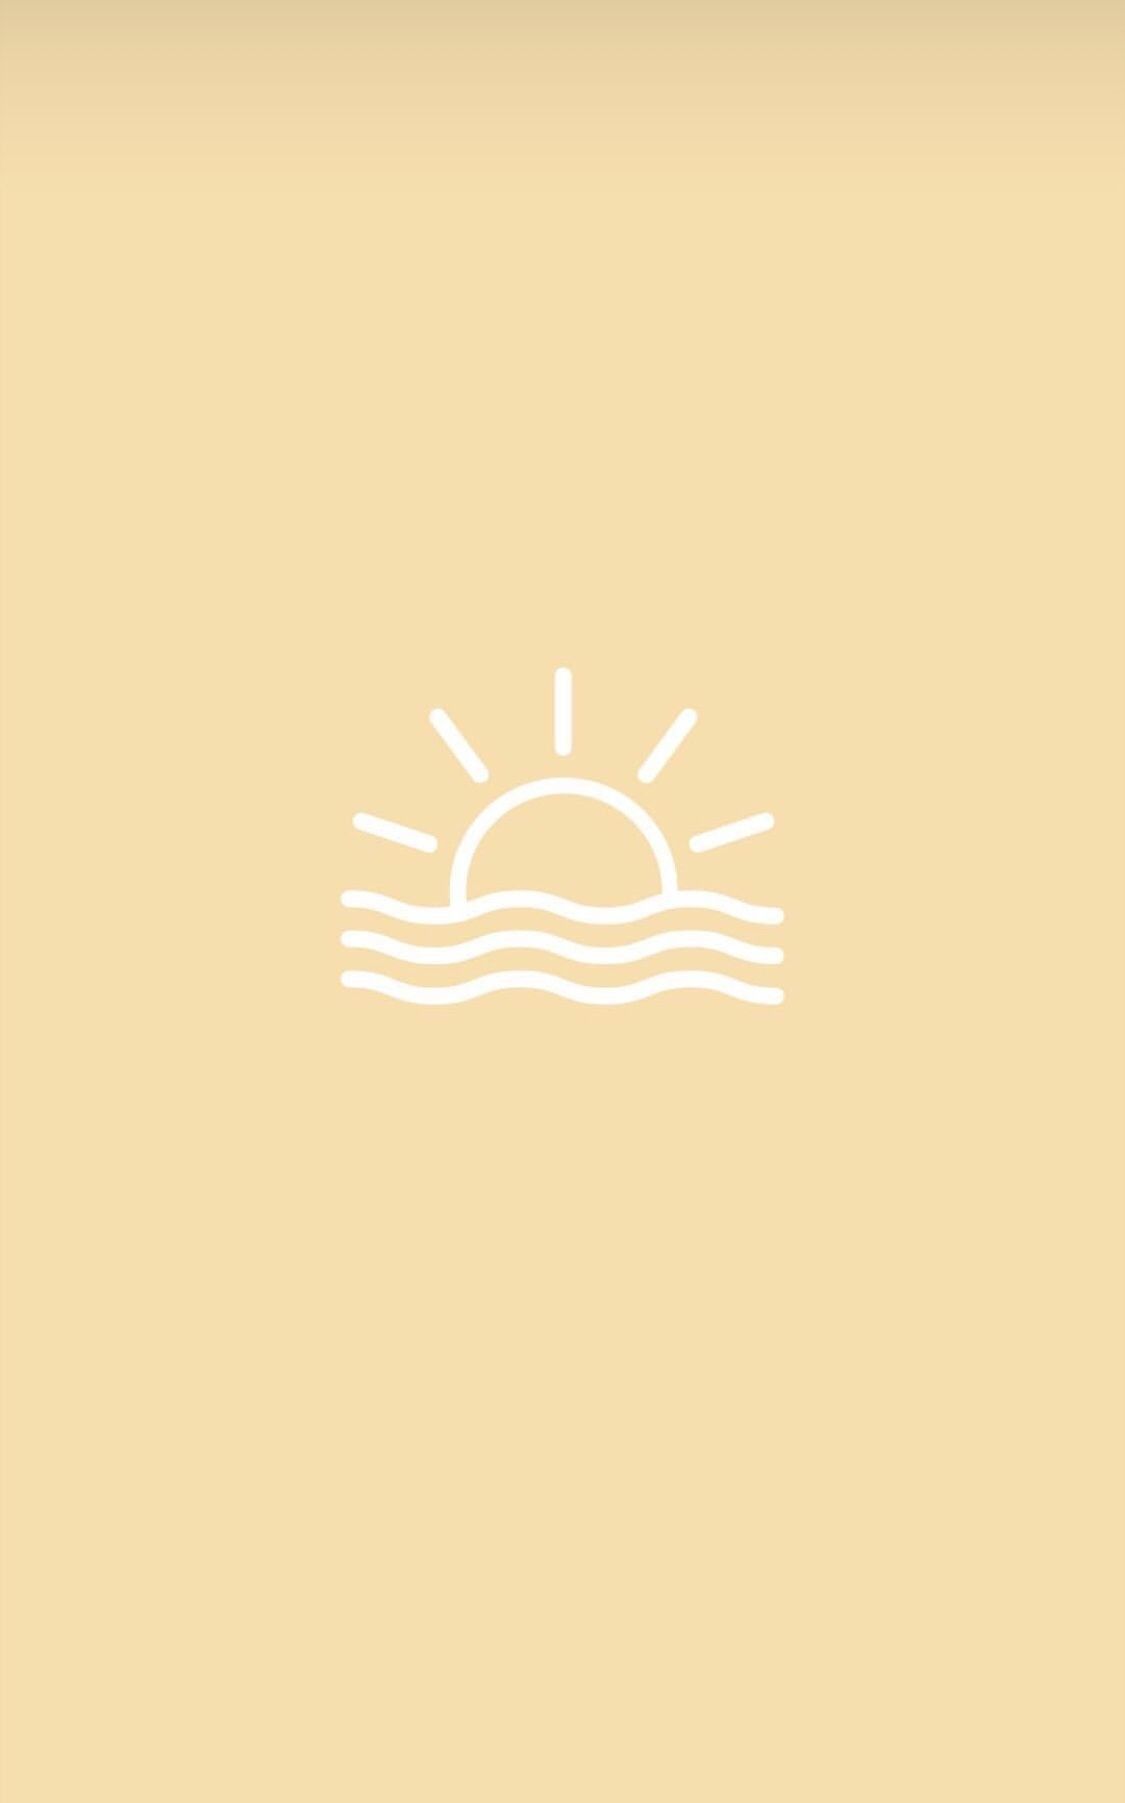 A minimalist sunset illustration on a yellow background - VSCO, sun